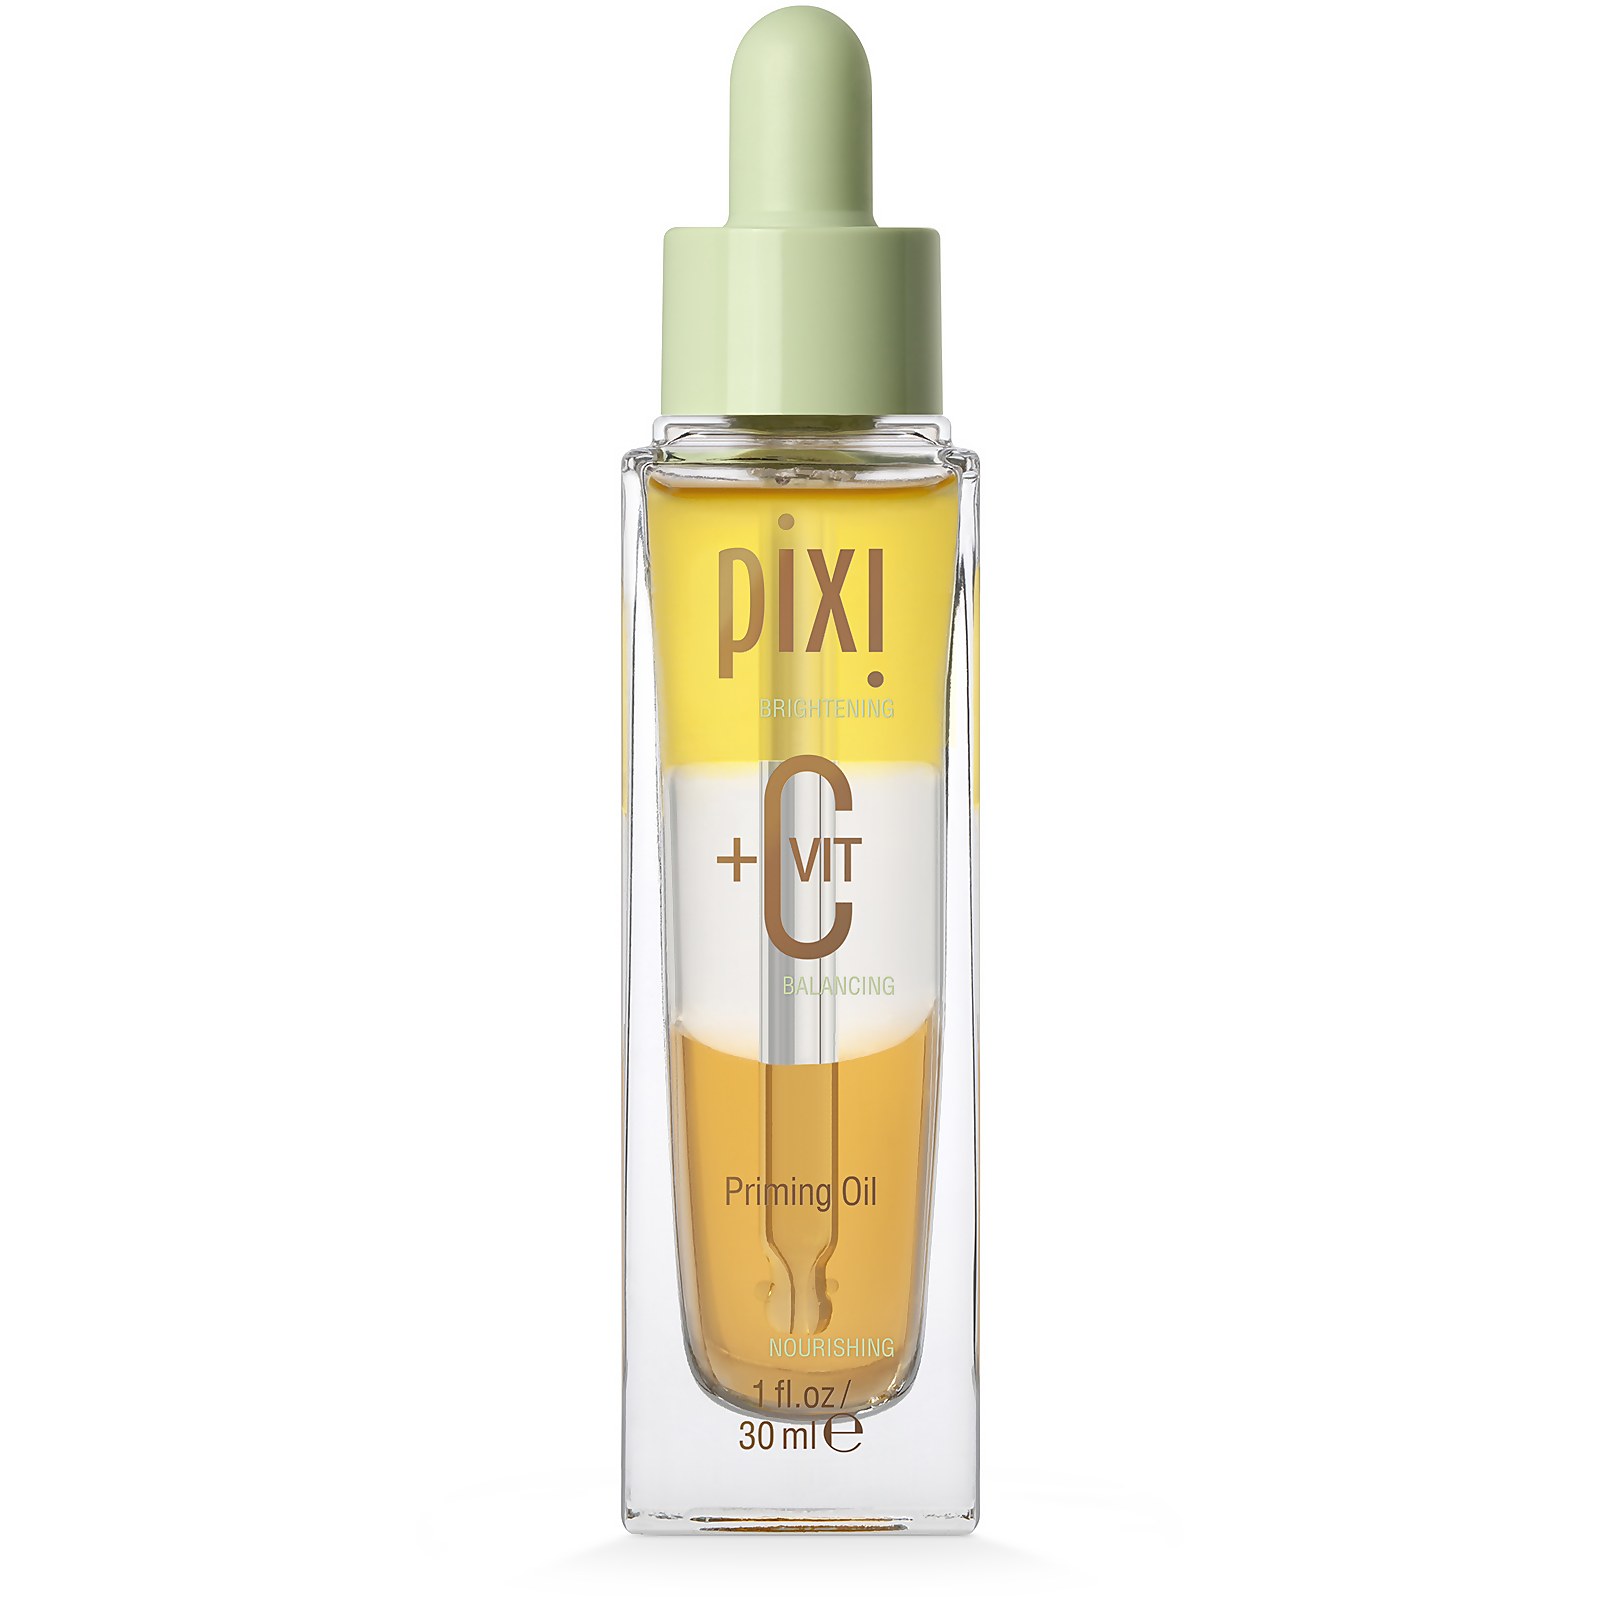 PIXI+C VIT三步曲美肤油面部精华油面部修护精油提拉紧致嫩肤30ml